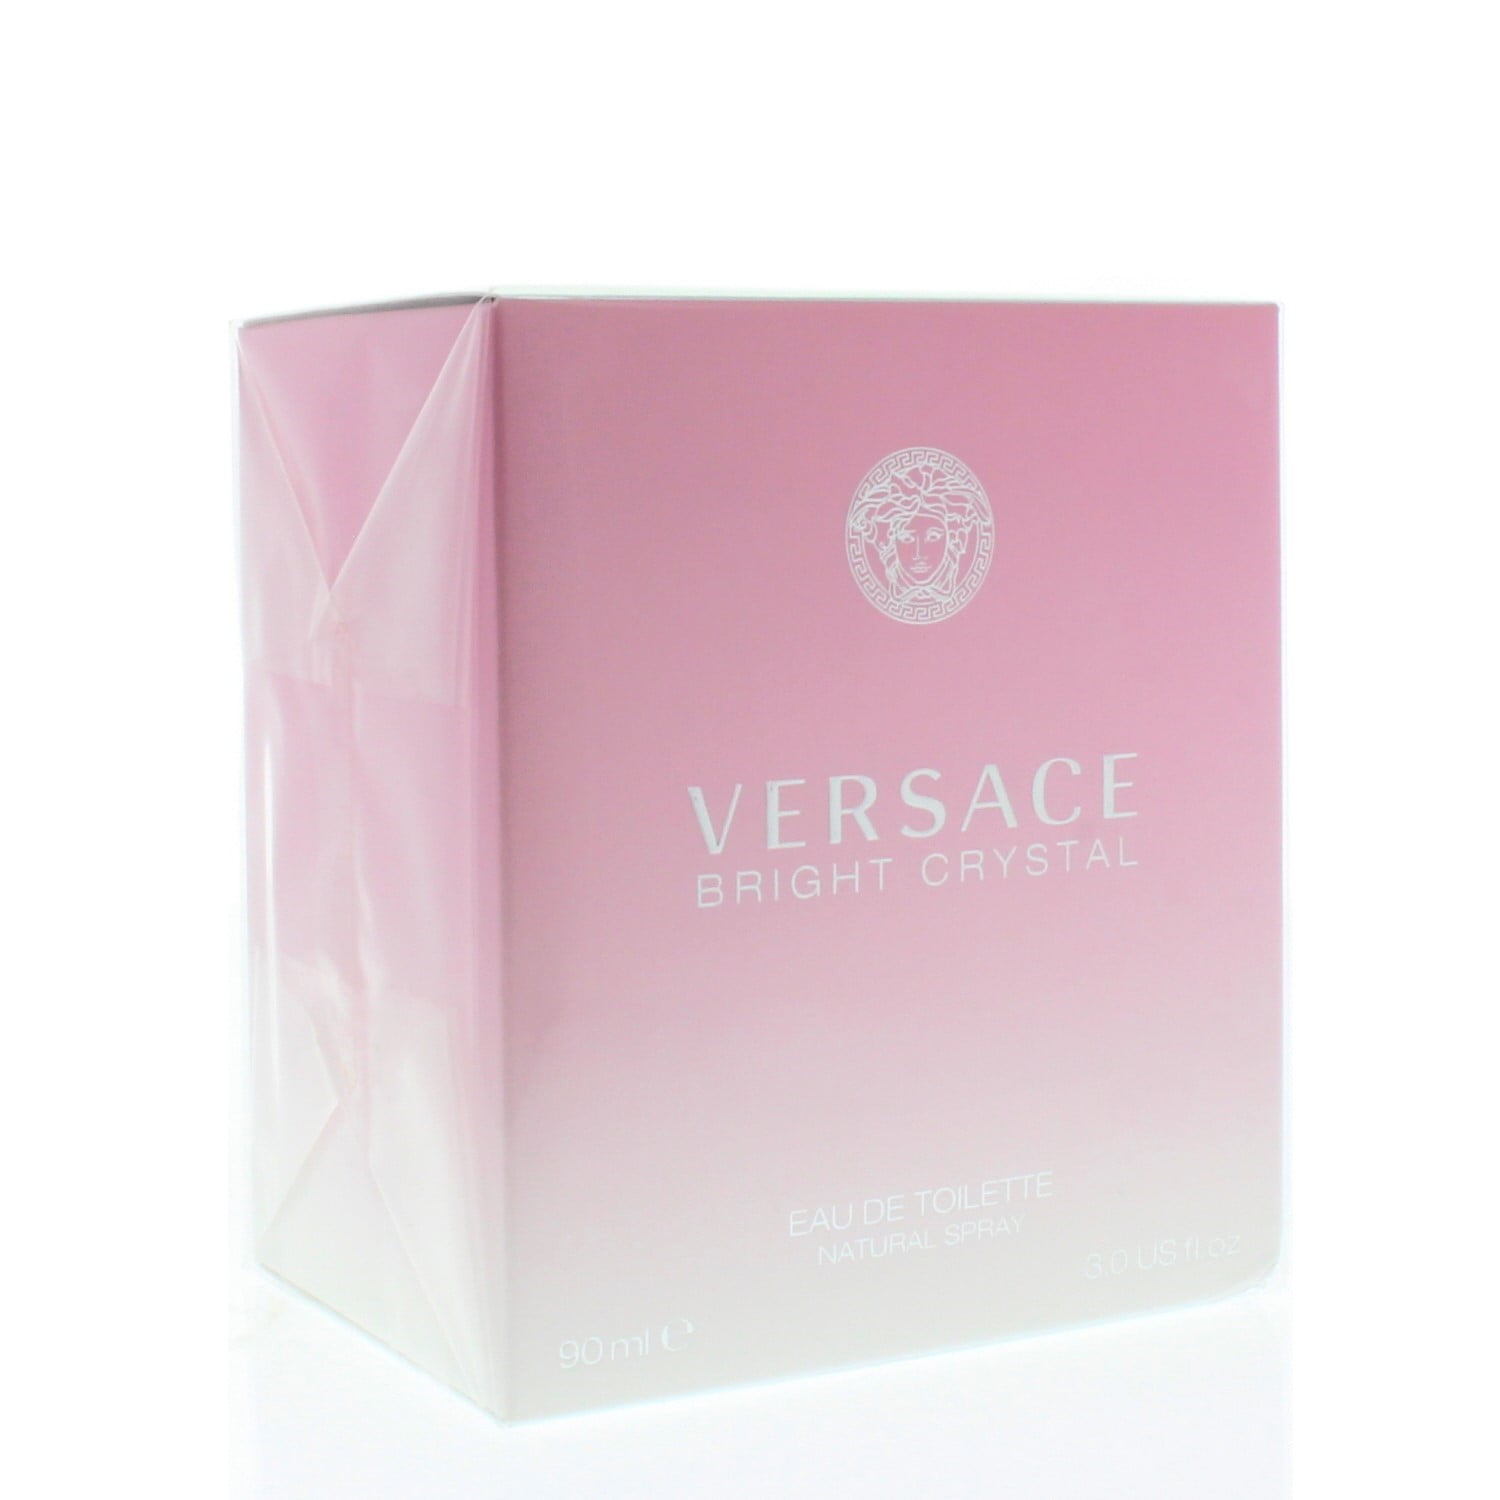 Buy Versace Woman Eau de Parfum 100 ml online at a great price